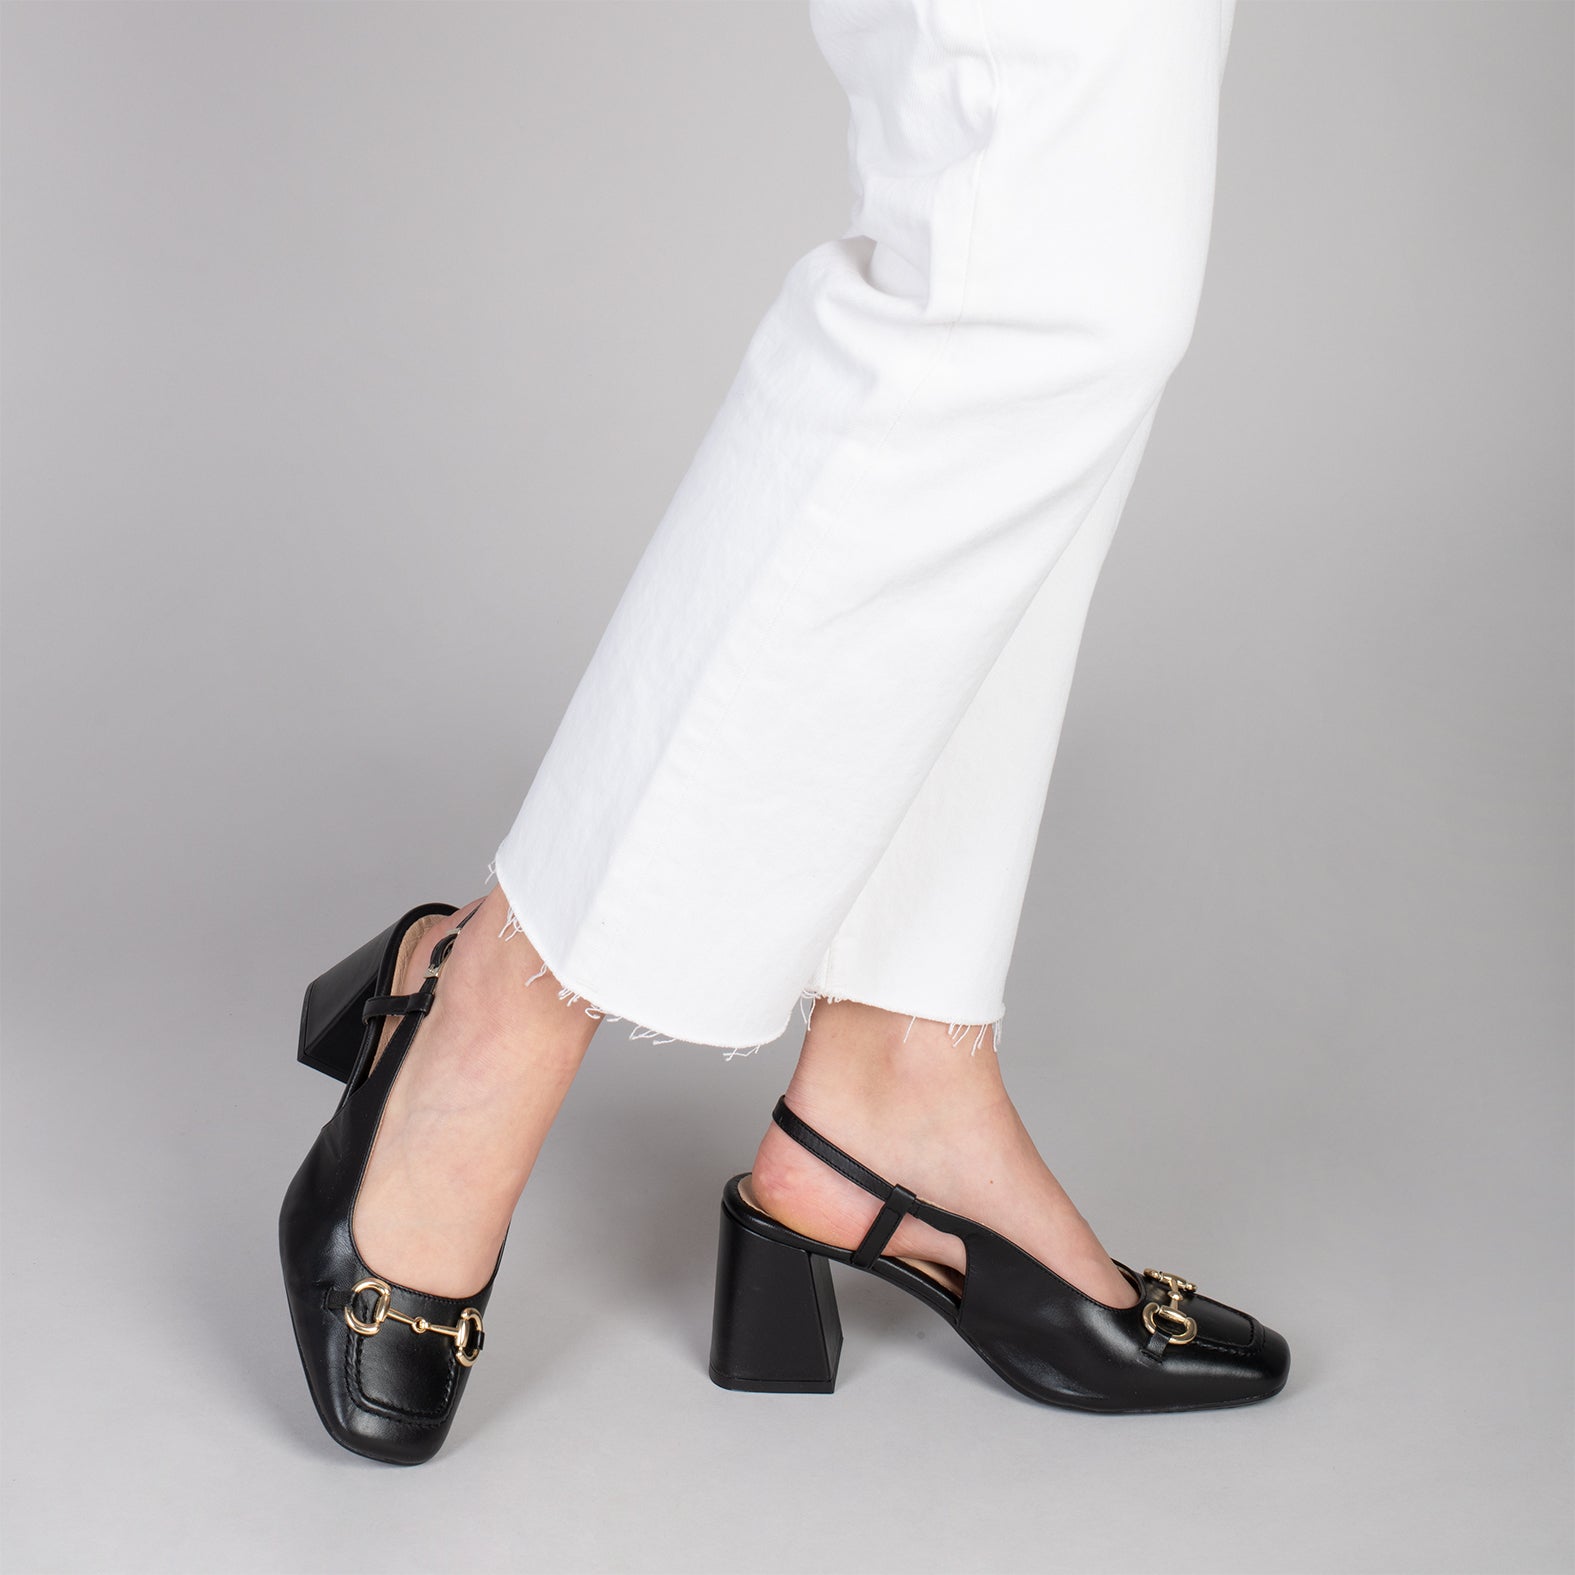 SLING-BACK MIA – BLACK sling-back heeled moccasins